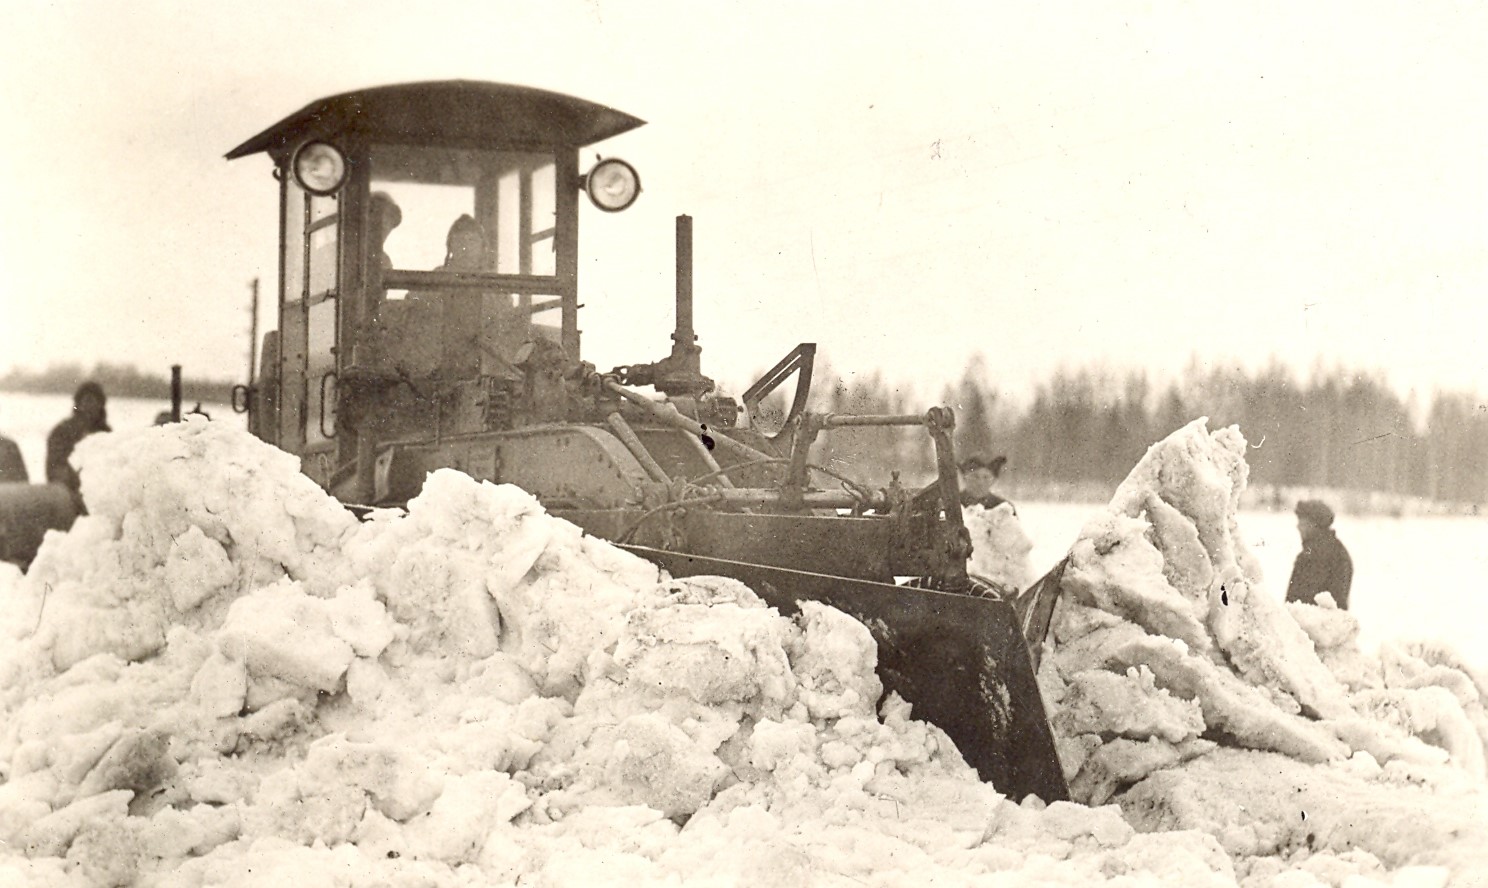 Alates 1927. aastast toodeti riigi tellimusel aktsiaselts Ilmarine tehases Bitvargen-tüüpi teehöövleid. Et need masinad seisid talveperioodil kasutult, sooviti 1928. aasta algul teedeministeeriumis visandada Rootsist tellitud saha eeskujul tehniline hõlm, mida olnuks võimalik teehöövlite külge kinnitada lumetõrjel. Bitvargen tüüpi höövlite katsetused lumetõrjel ei osutunud siiski edukaks. Hoopis paremaid tulemusi andis see aga 1930. aastate lõpul kasutusse võetud võimsamate Caterpillari höövlitega (fotol). 